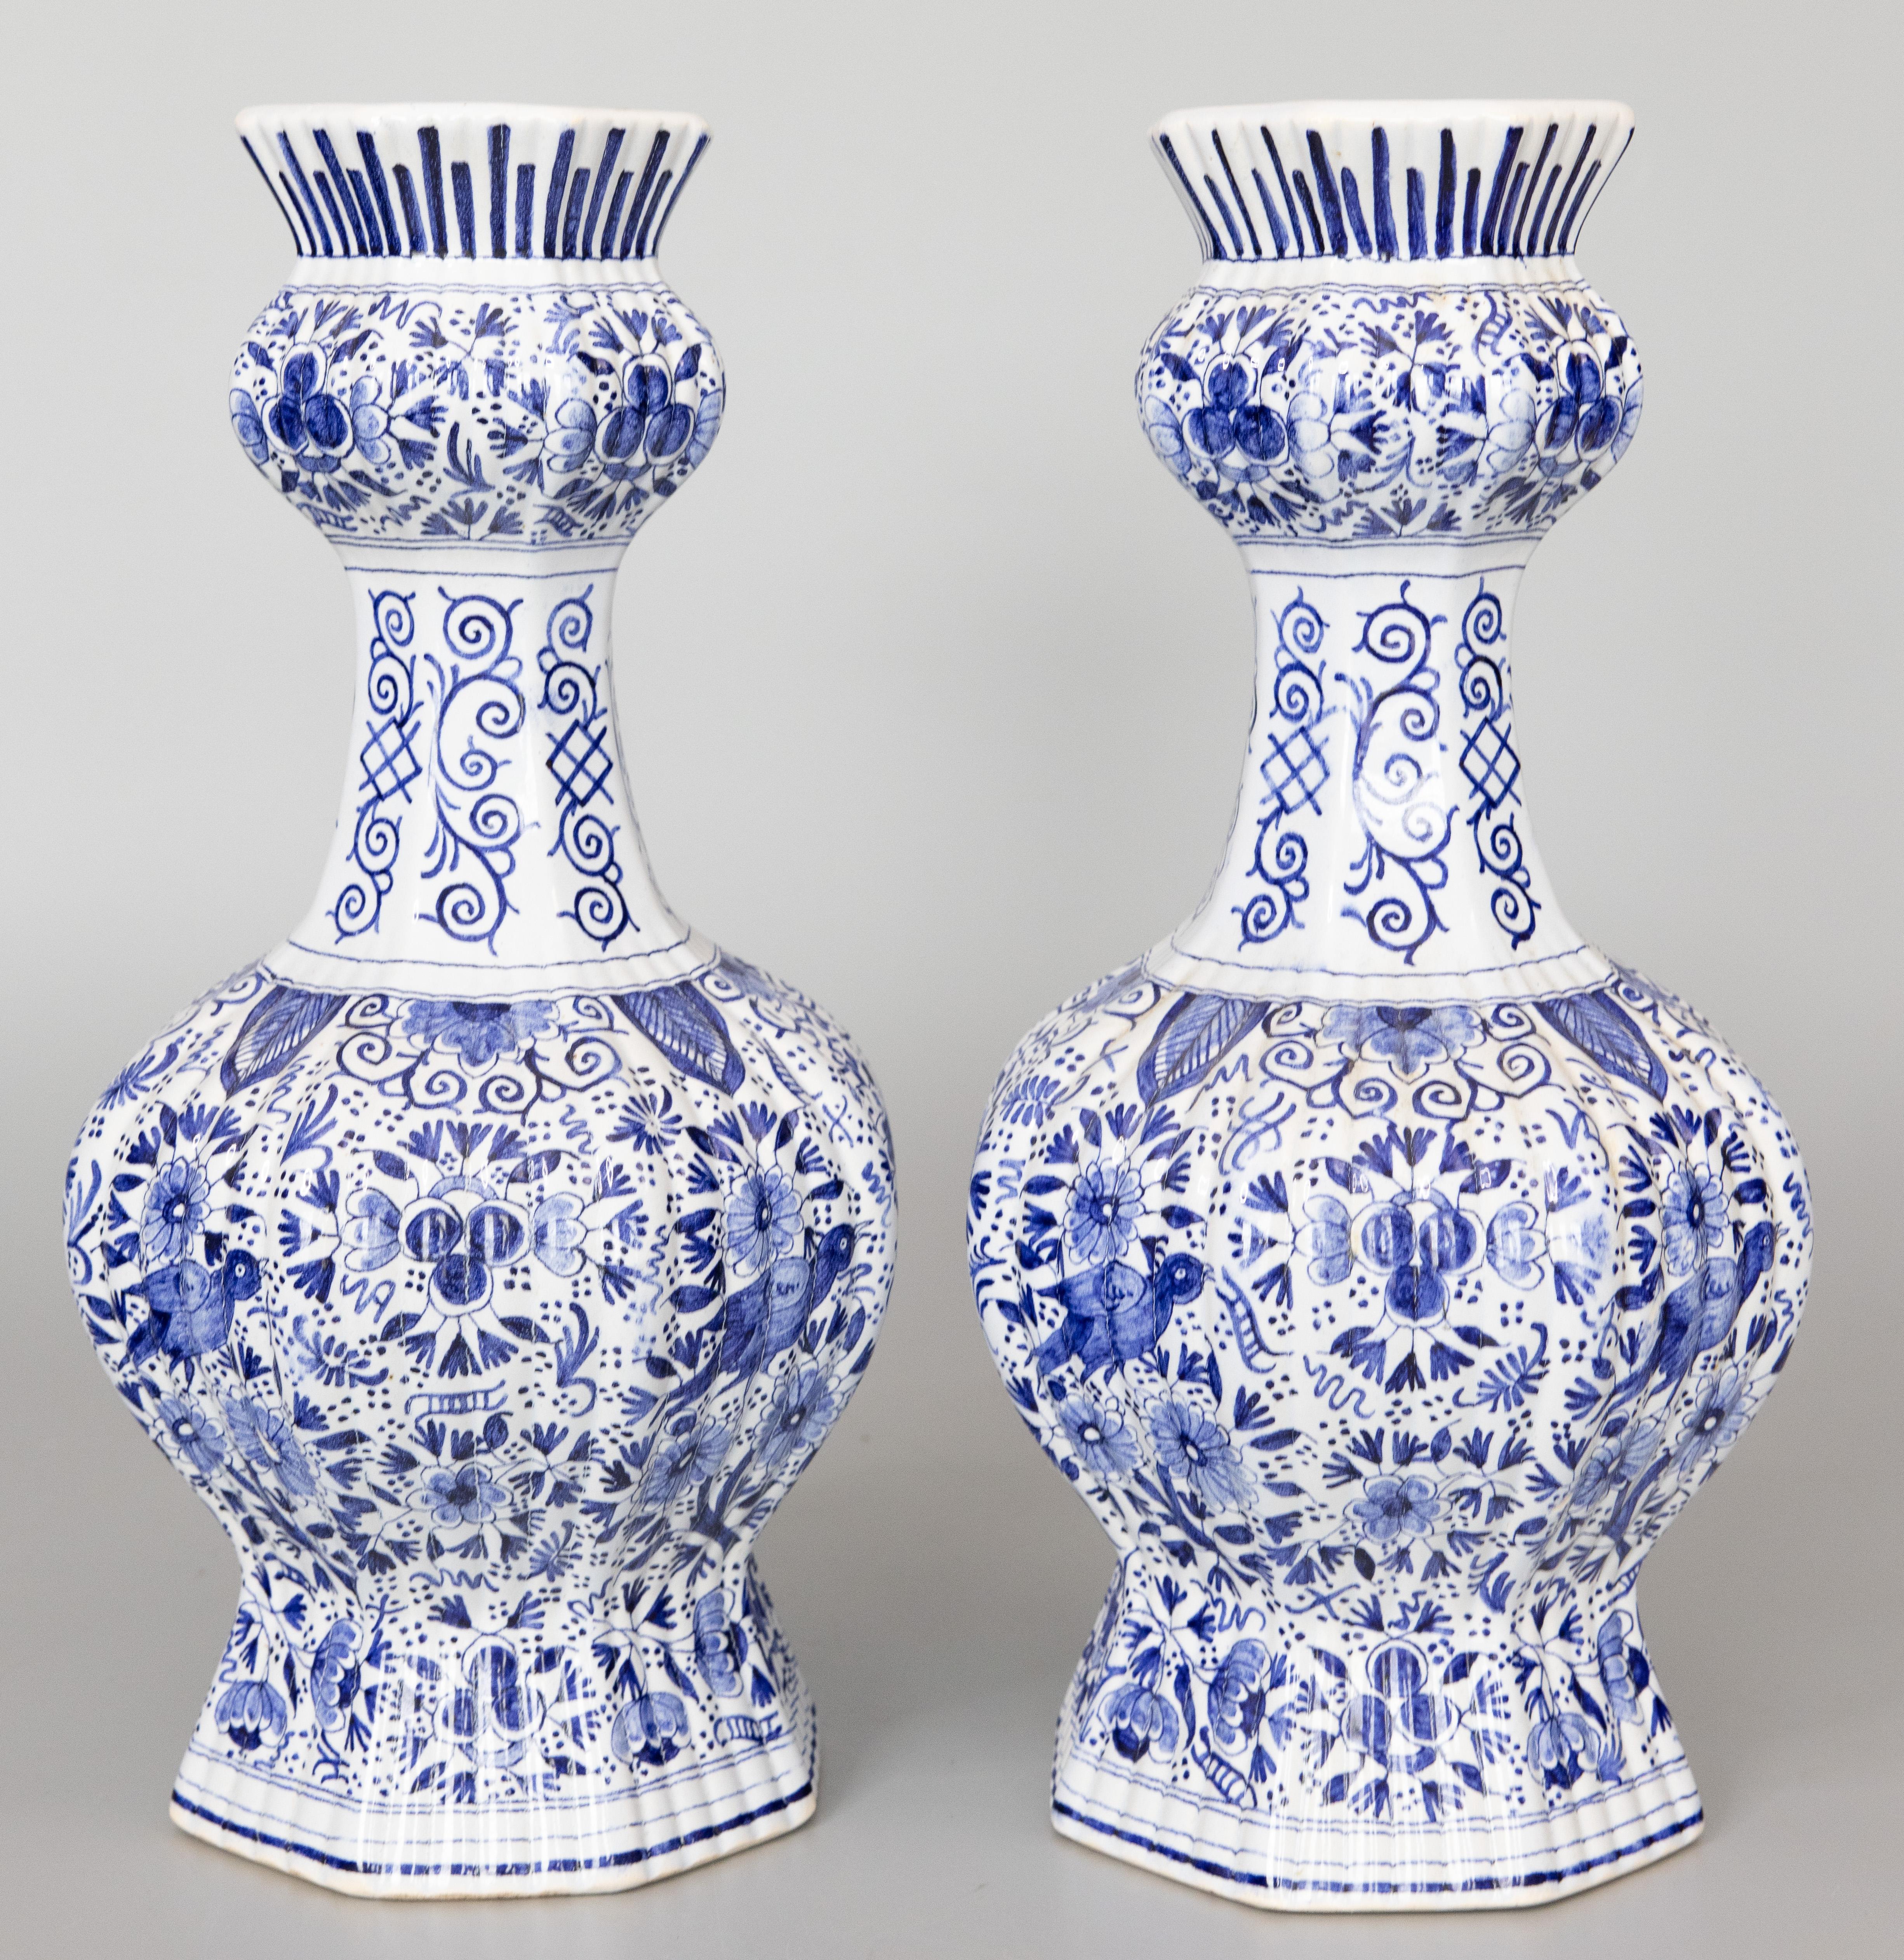 Ein großartiges Paar antiker holländischer Delft-Fayence-Knaufvasen aus dem 19. Jahrhundert, um 1800. Herstellermarke auf der Rückseite. Diese prächtigen Vasen haben einen schönen gerippten Körper mit feinen handgemalten Vögeln, Blumen, Blättern und